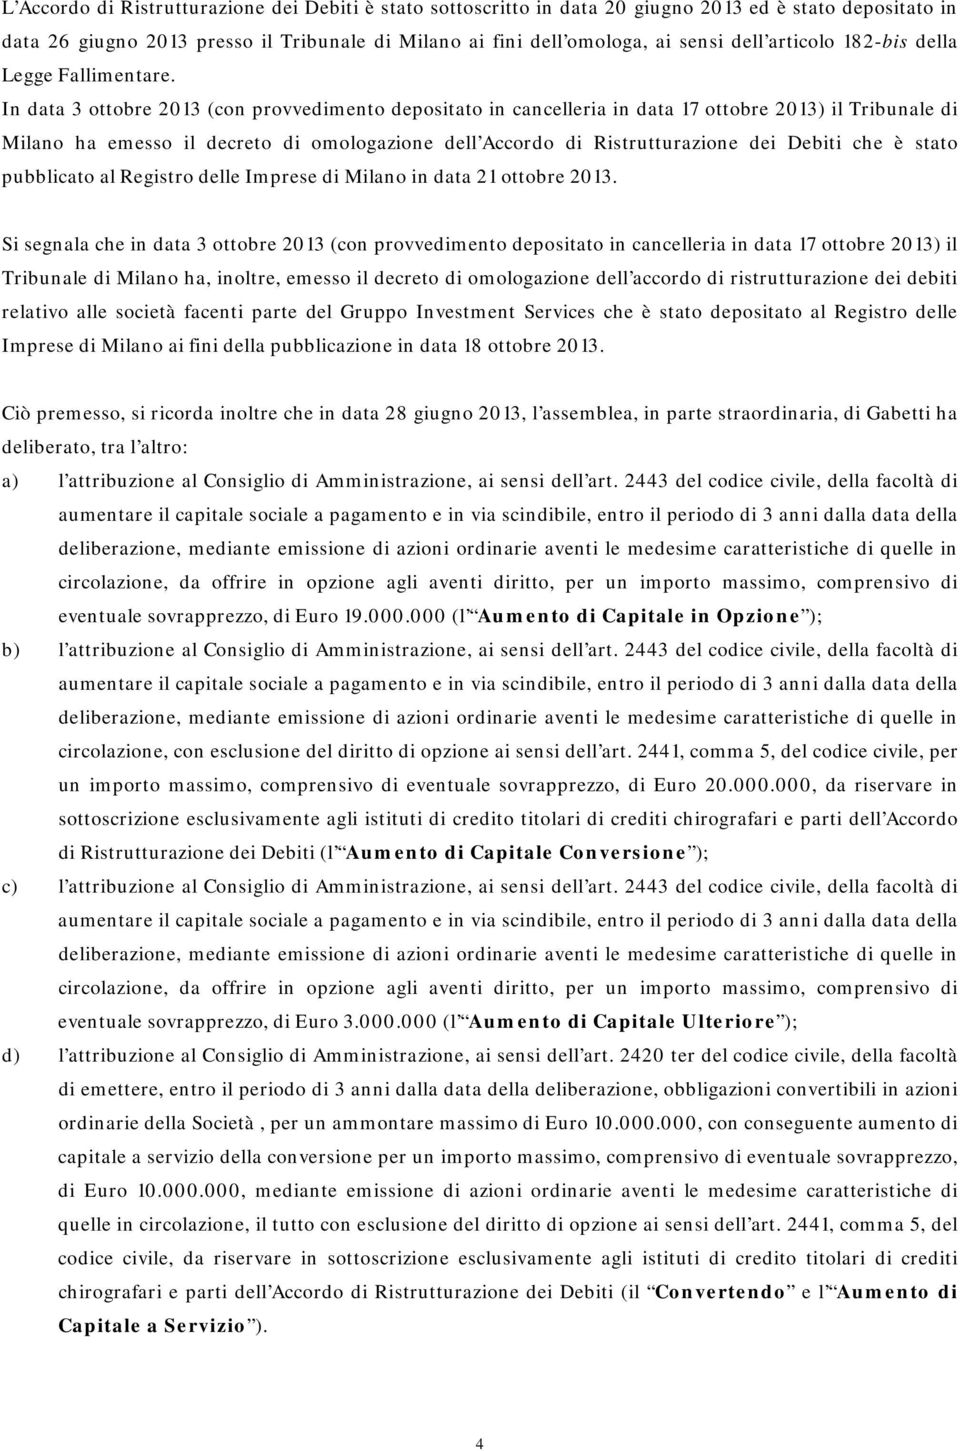 In data 3 ottobre 2013 (con provvedimento depositato in cancelleria in data 17 ottobre 2013) il Tribunale di Milano ha emesso il decreto di omologazione dell Accordo di Ristrutturazione dei Debiti